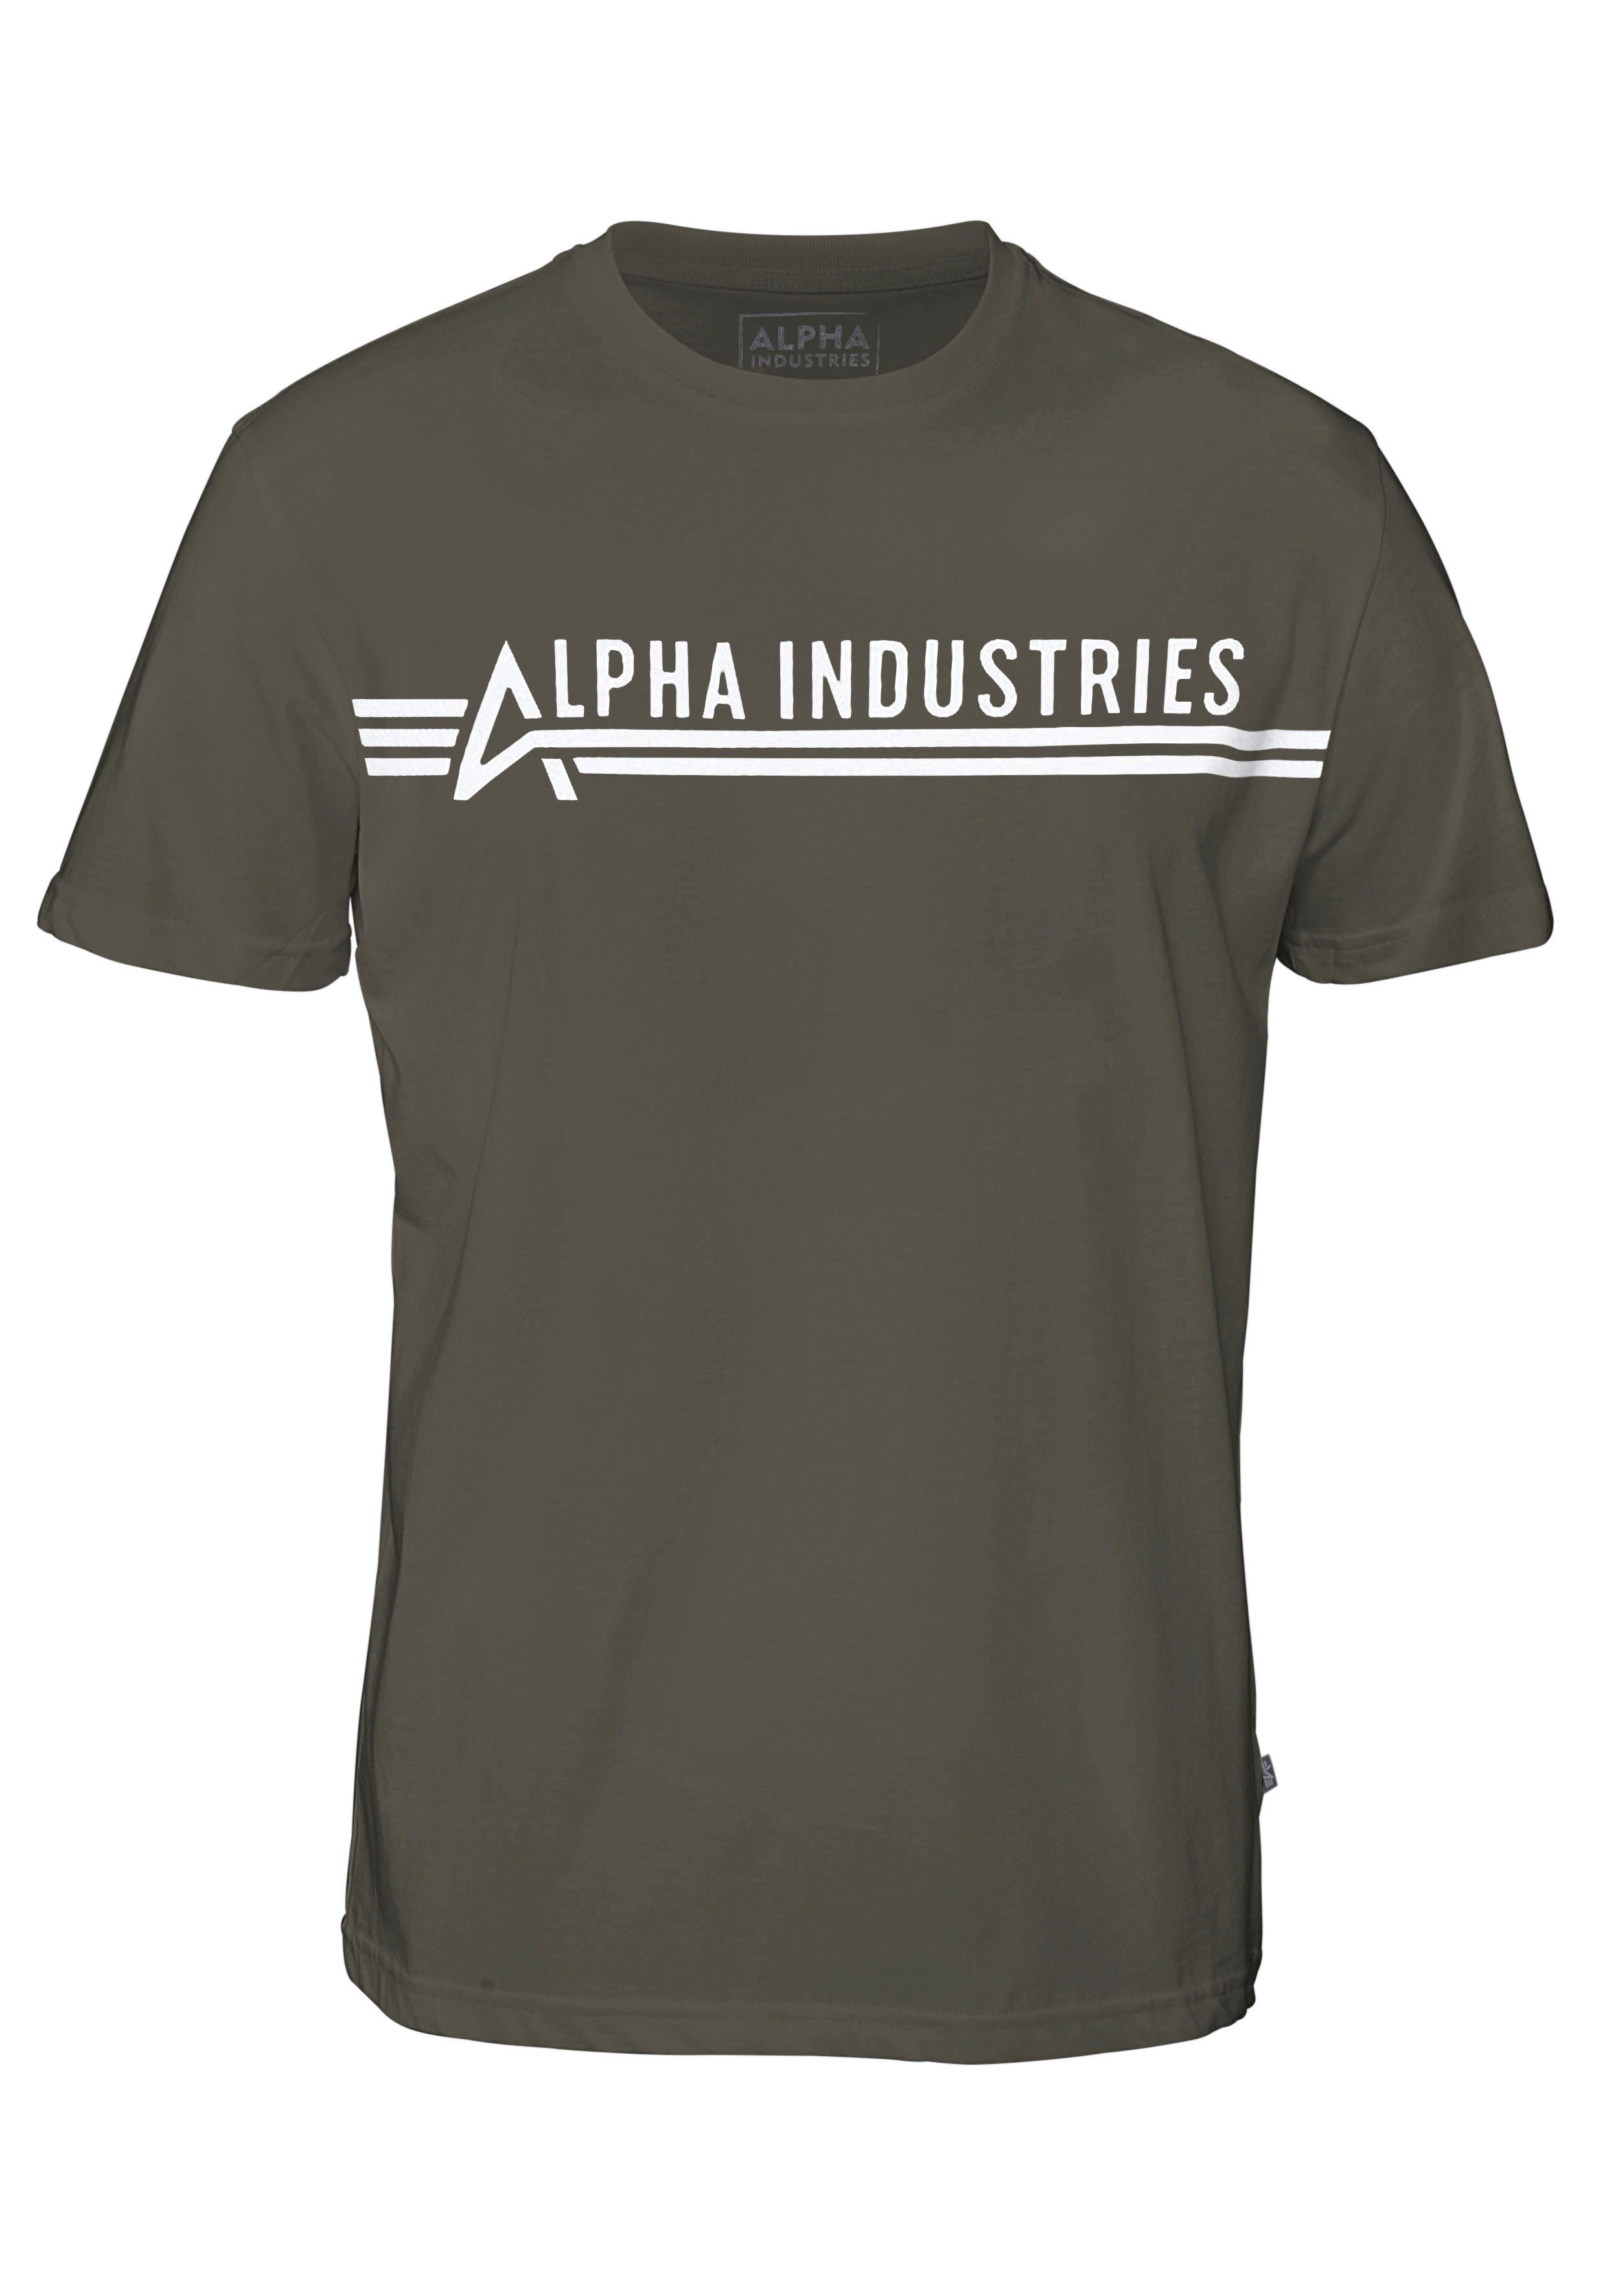 Alpha Industries Rundhalsshirt ALPHA olivgrün INDUSTRIES T